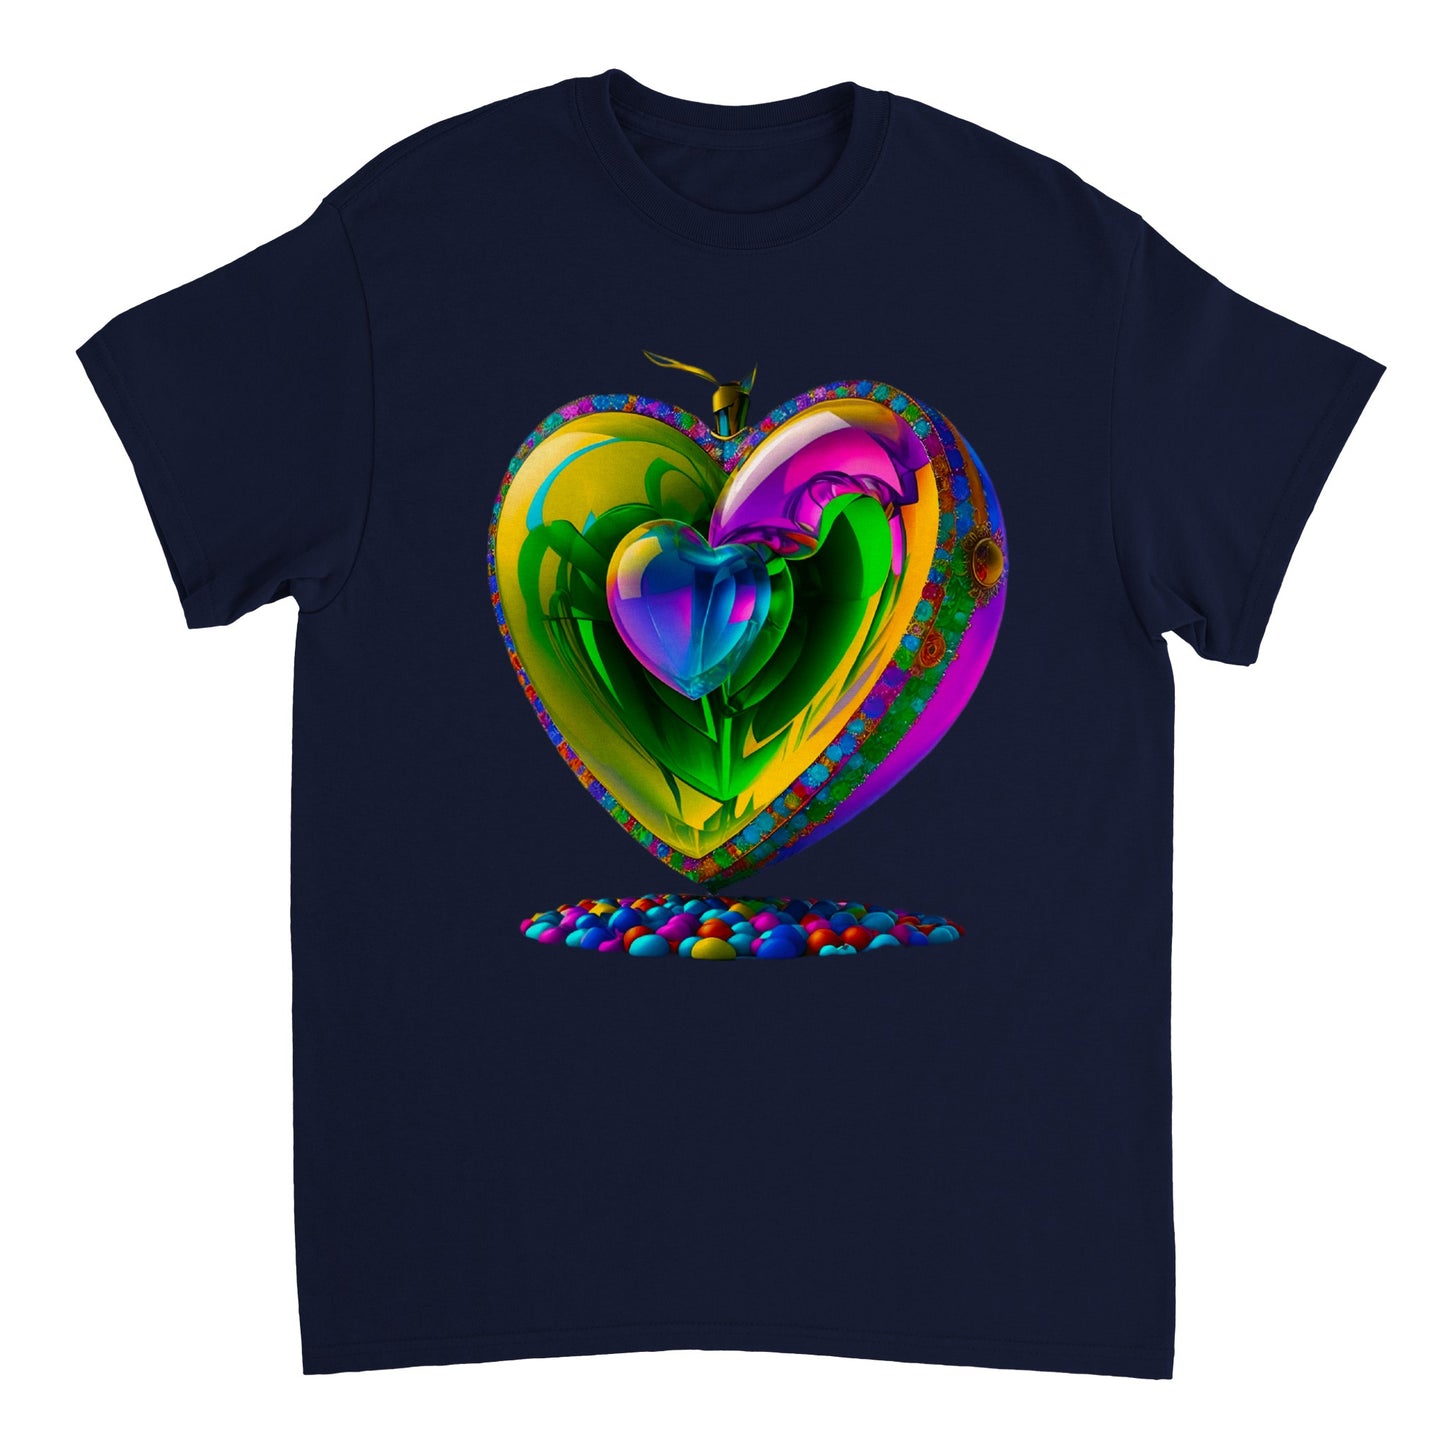 Love Heart - Heavyweight Unisex Crewneck T-shirt 55